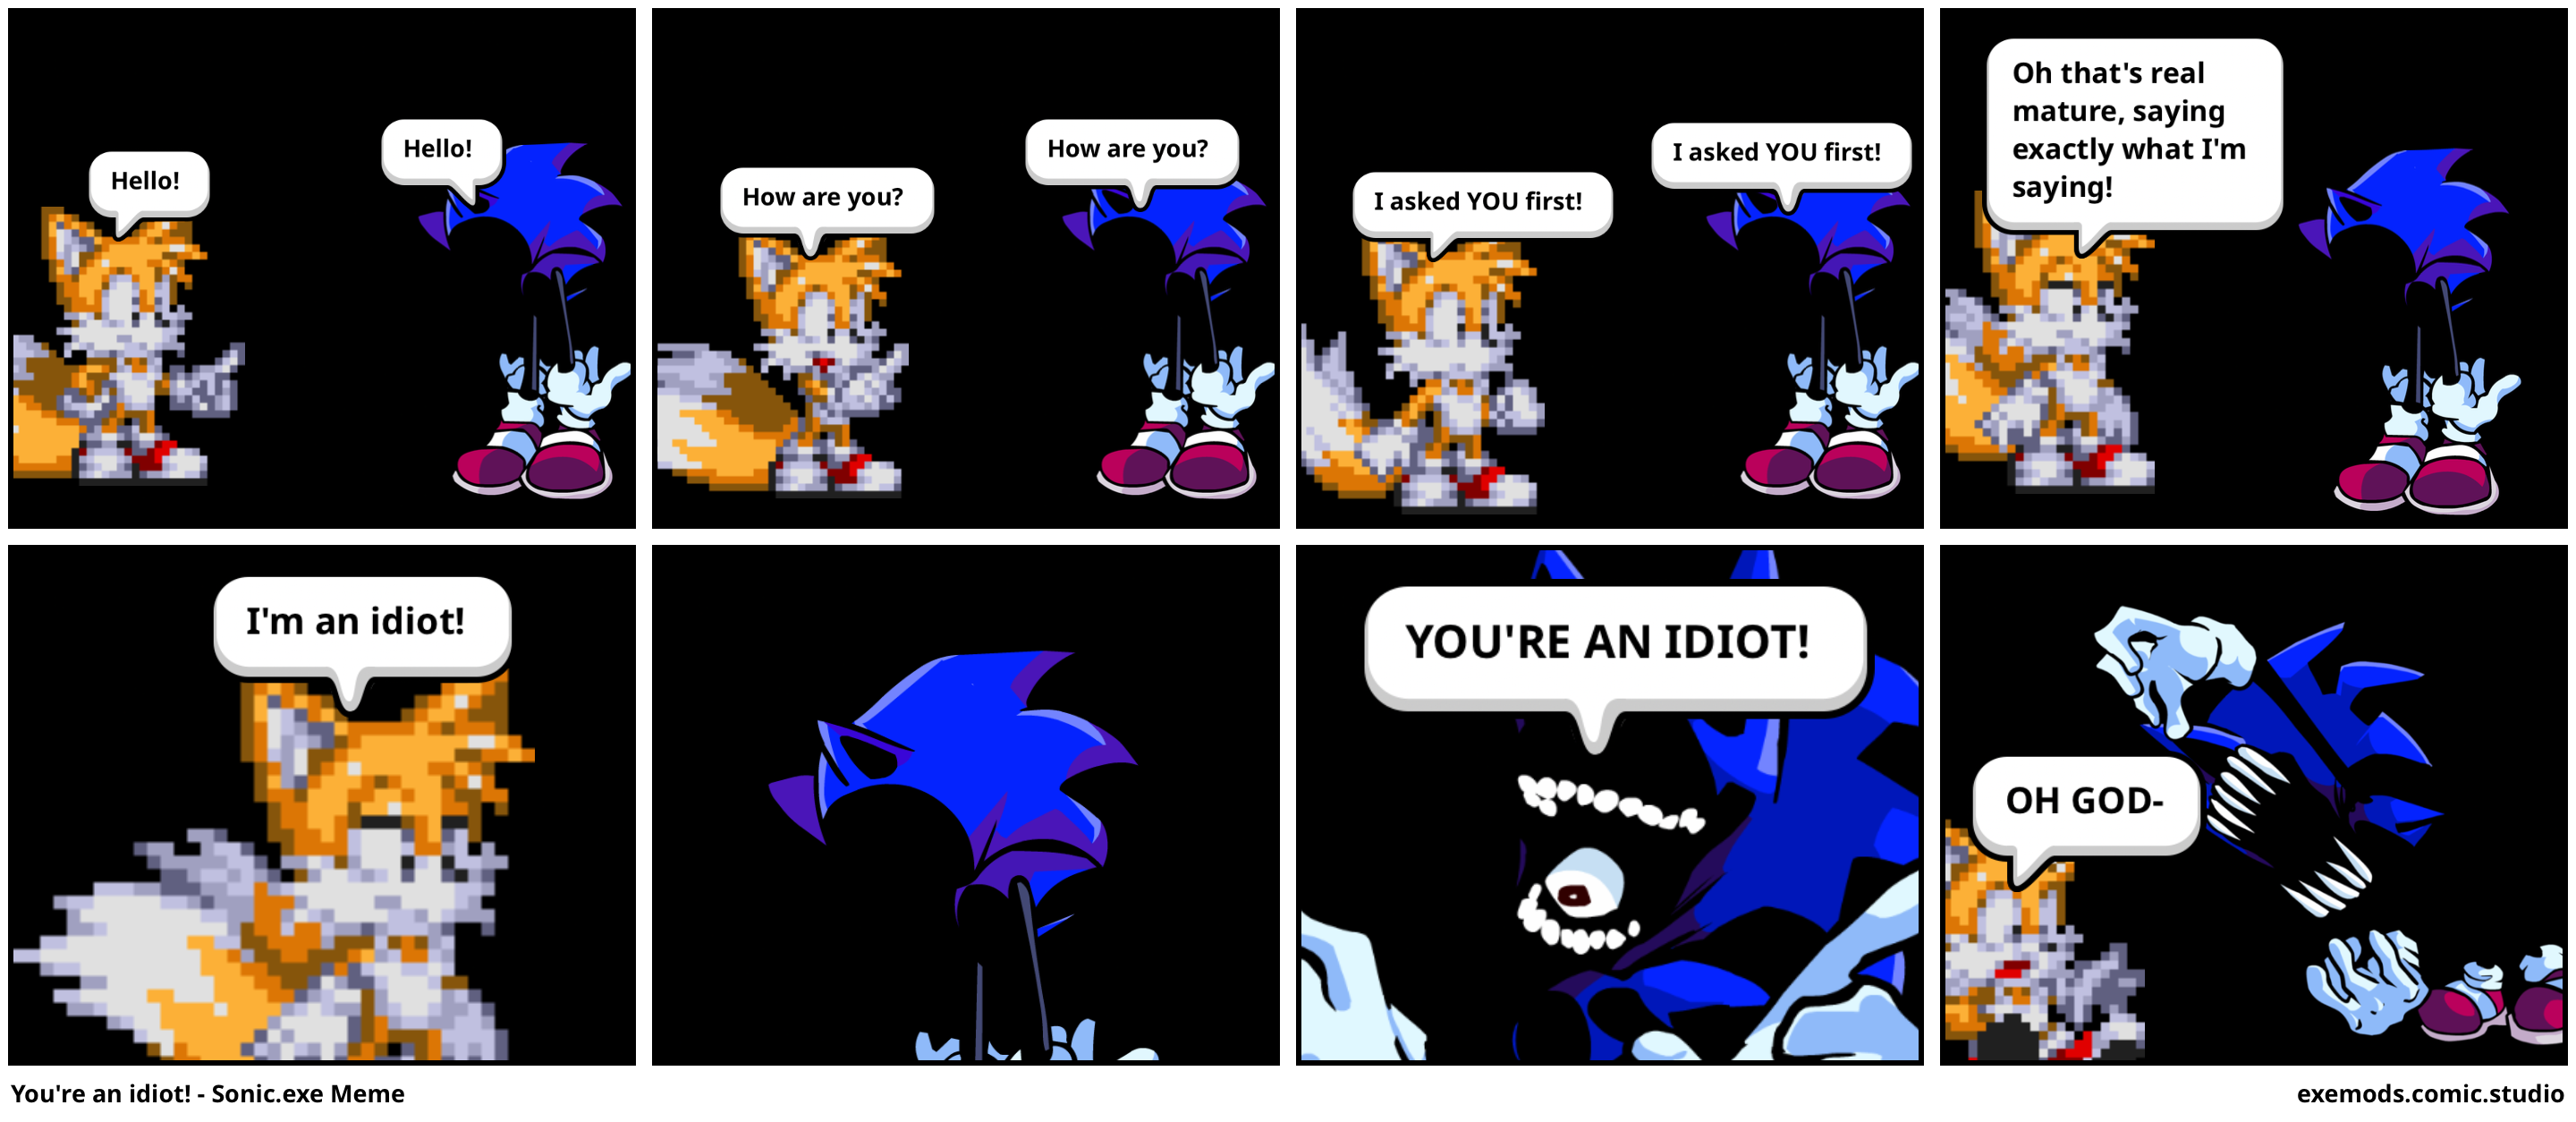 You're an idiot! - Sonic.exe Meme